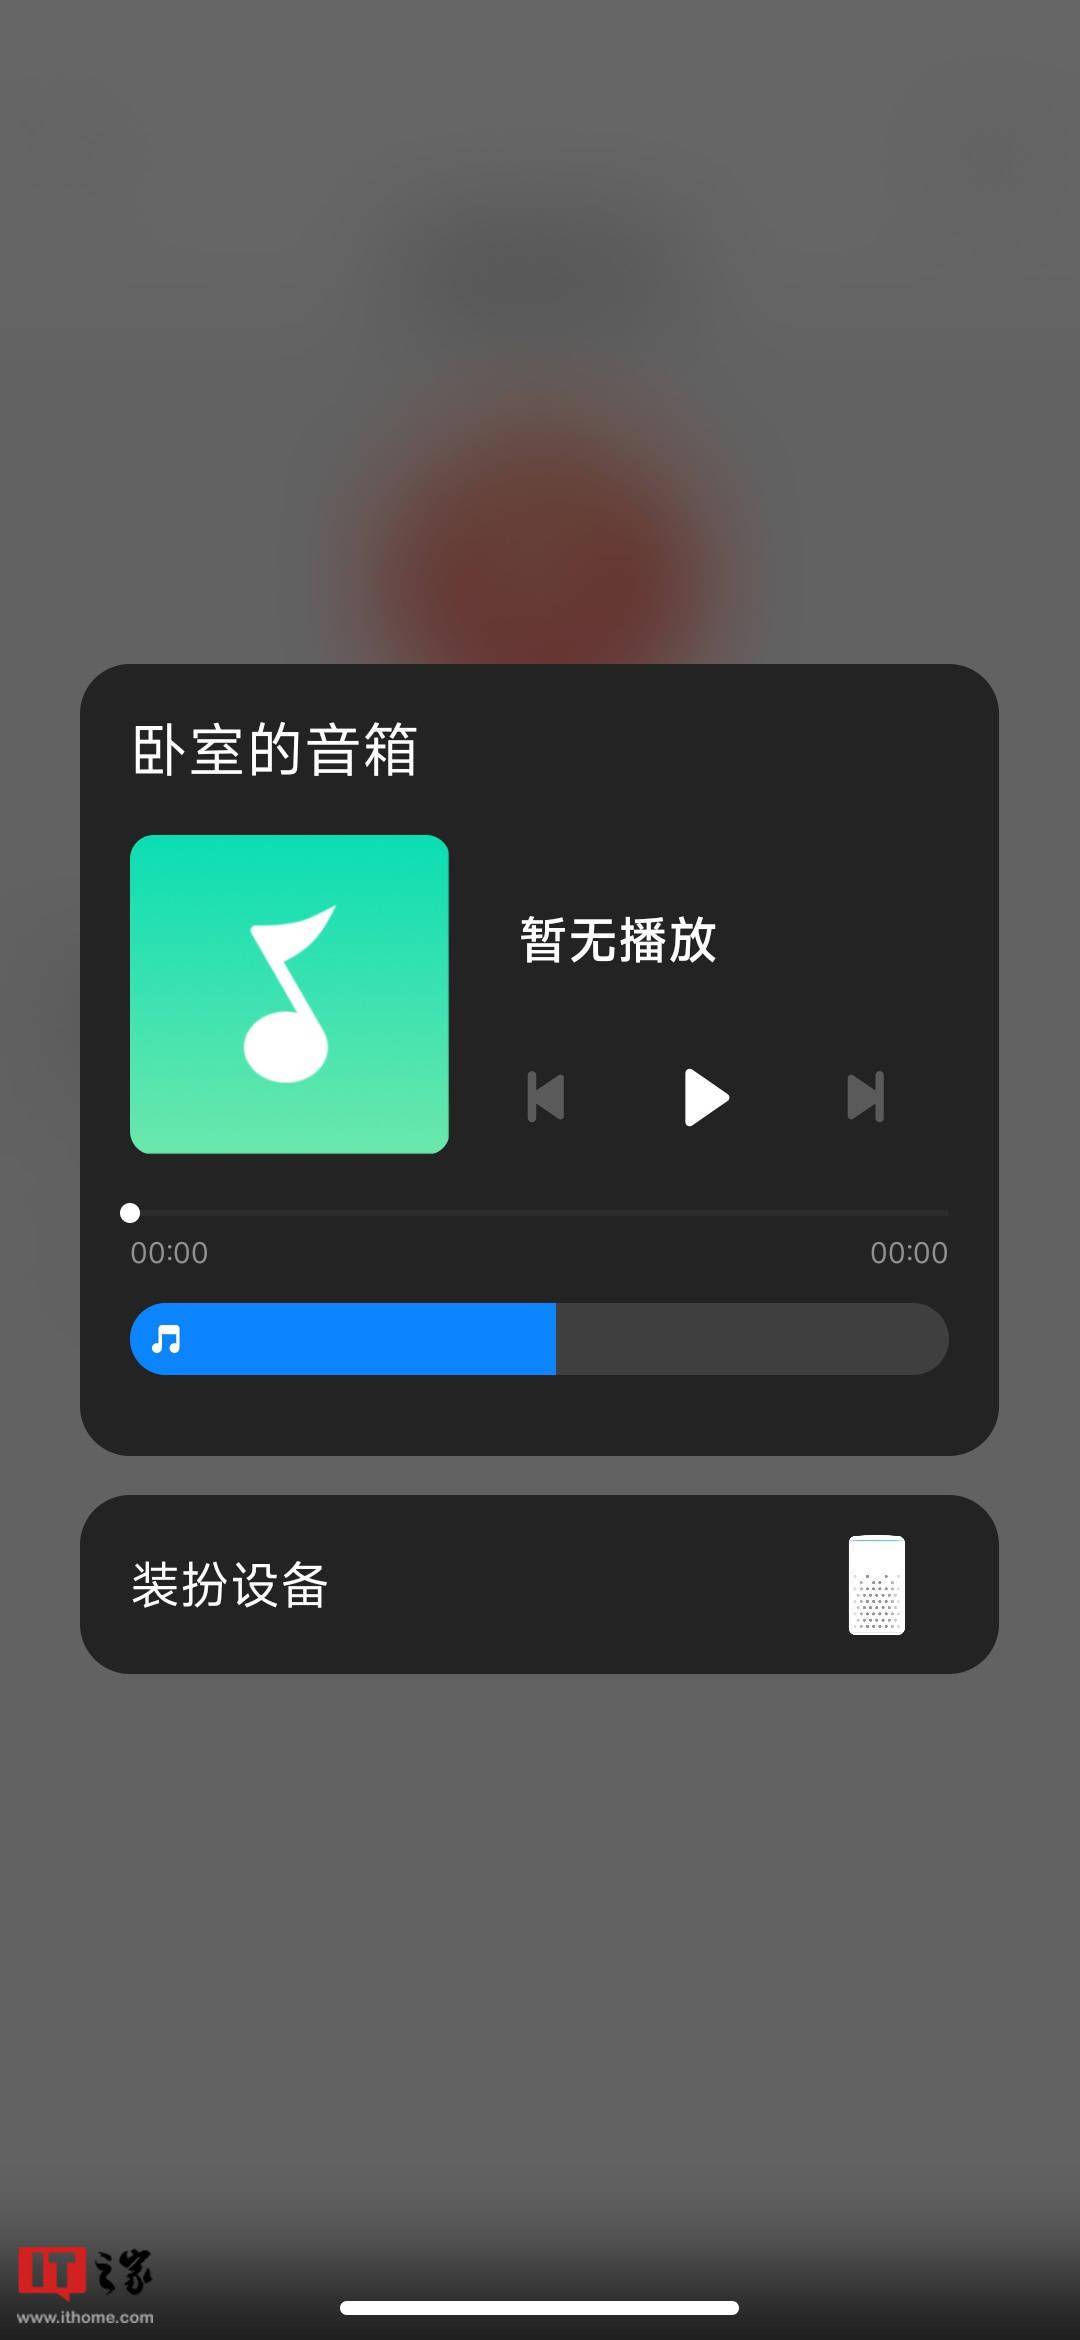 肥老影音播放器苹果版:小米Sound音箱适配小米妙享2.0